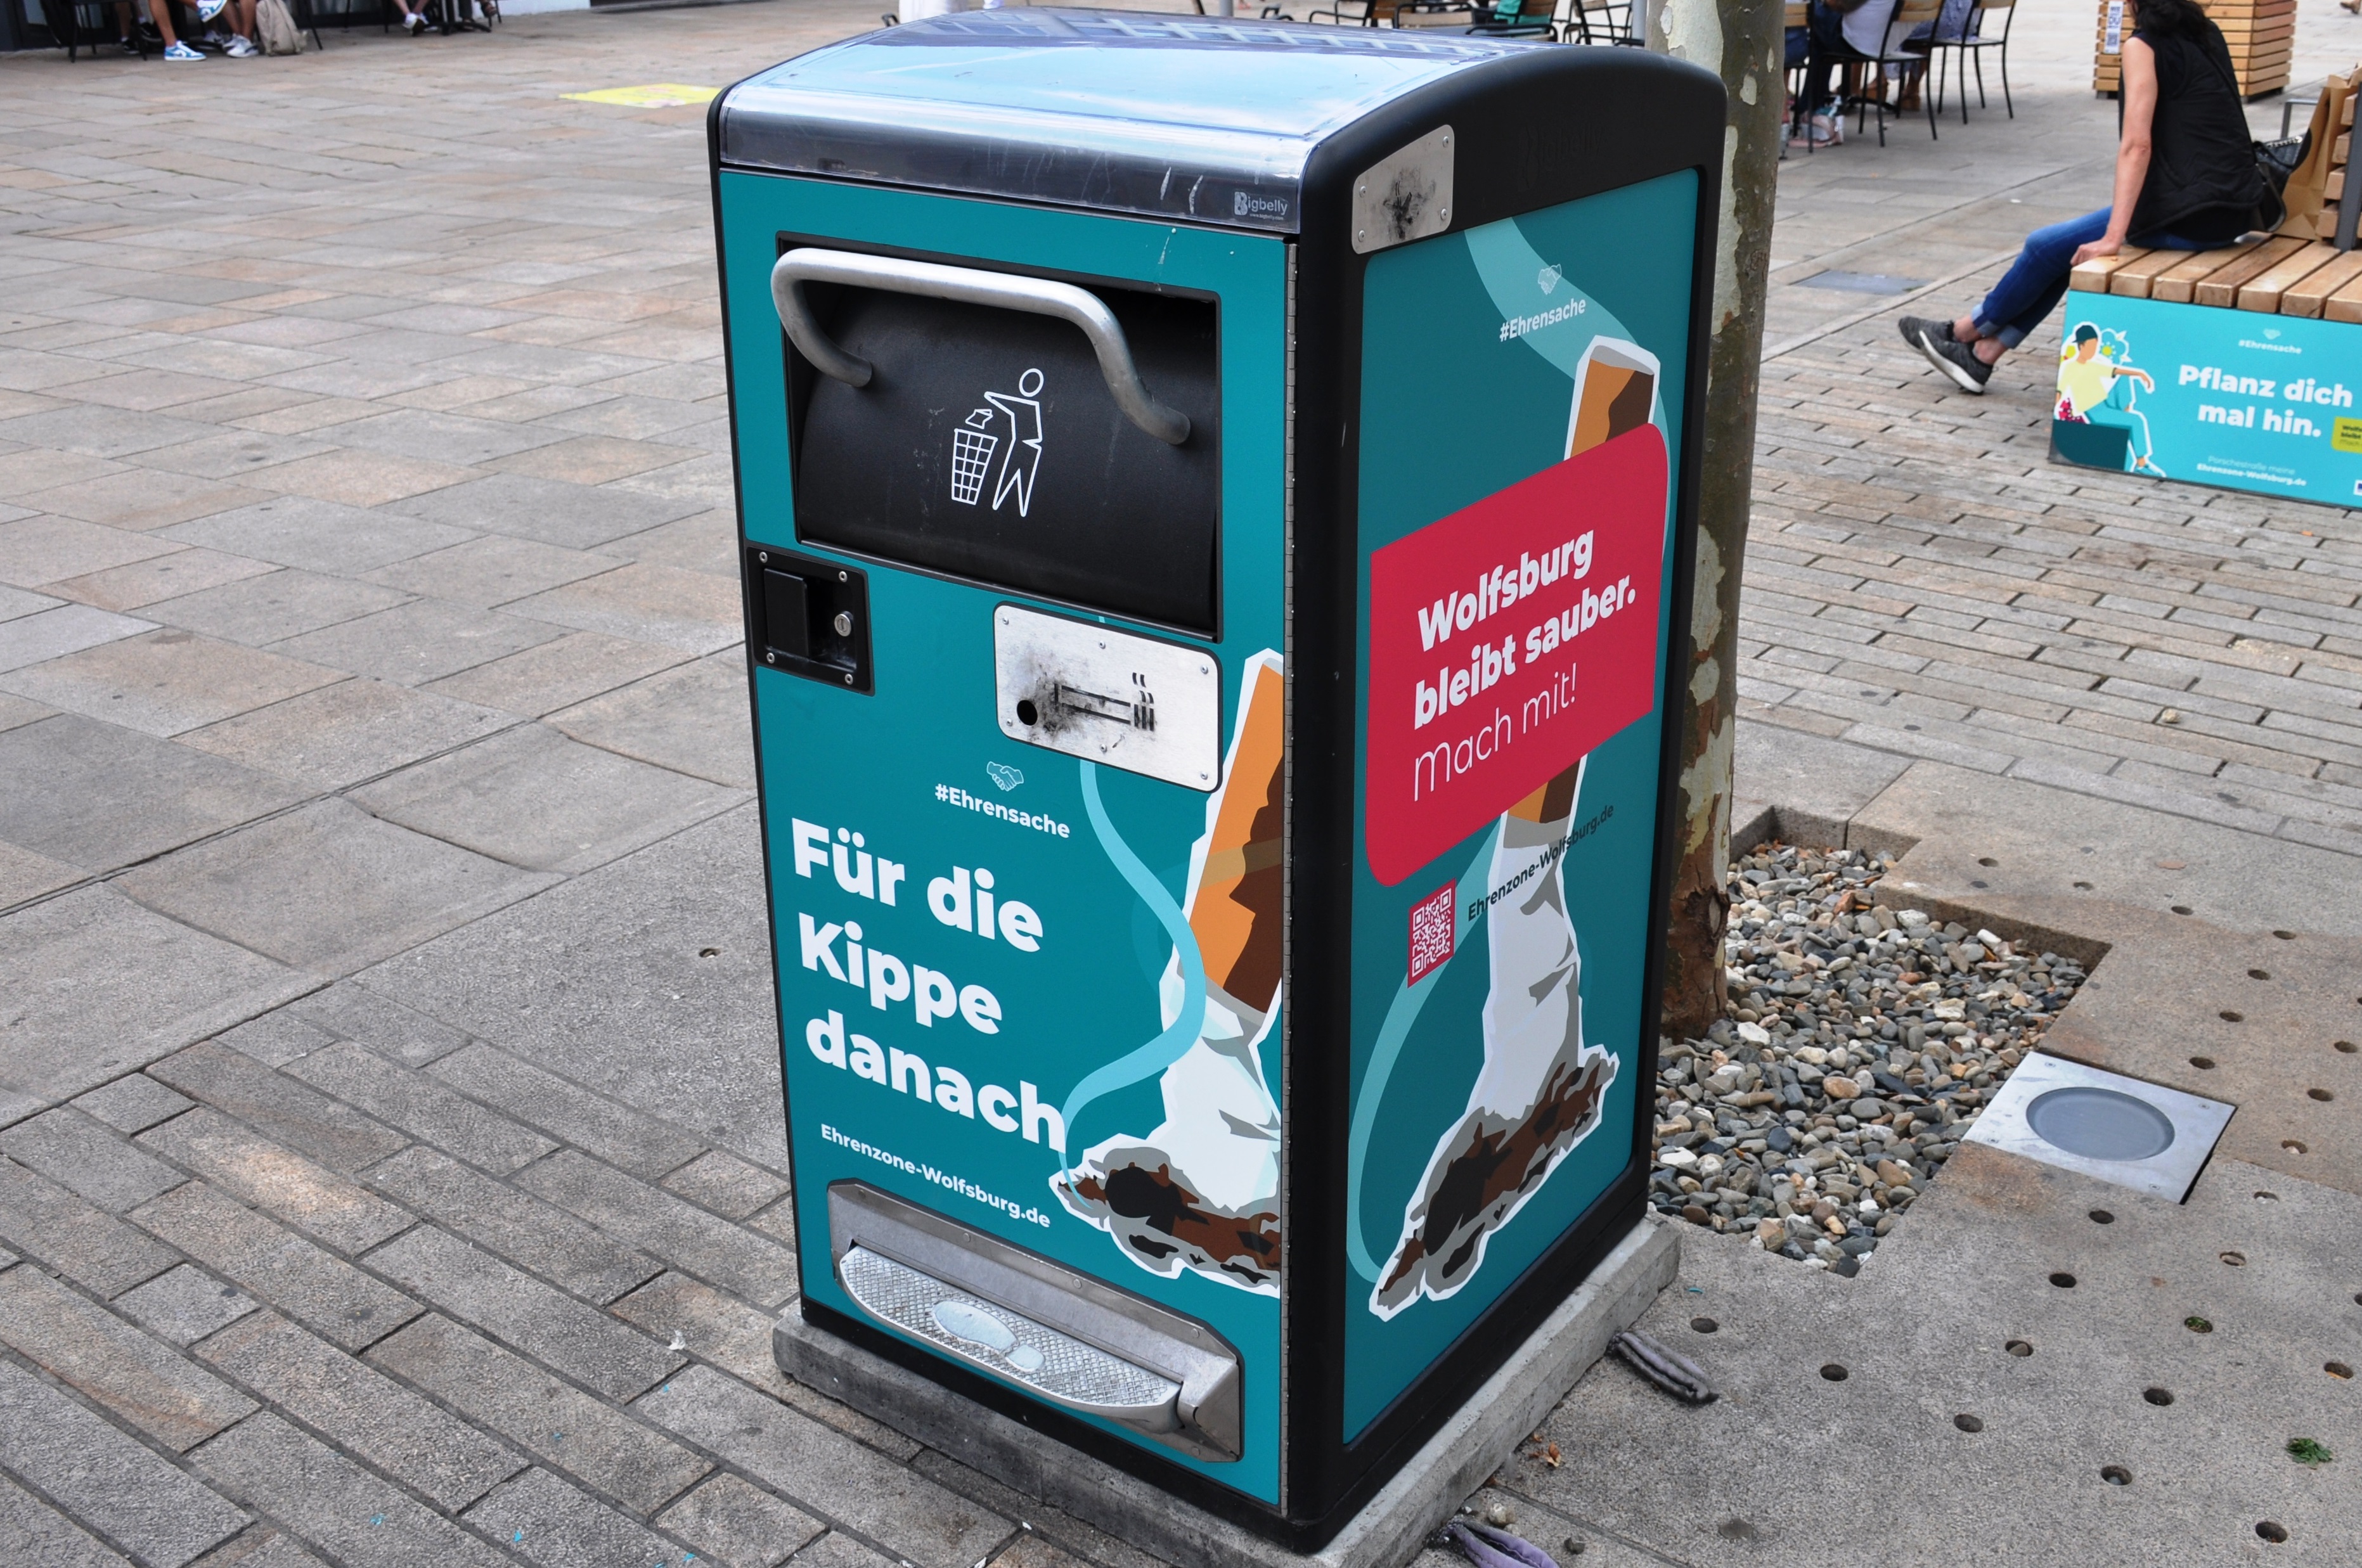 Kampagne zur Sauberkeit und Sicherheit in der Innenstadt "Ehrensache" - Mülleimer "Für die Kippe danach"